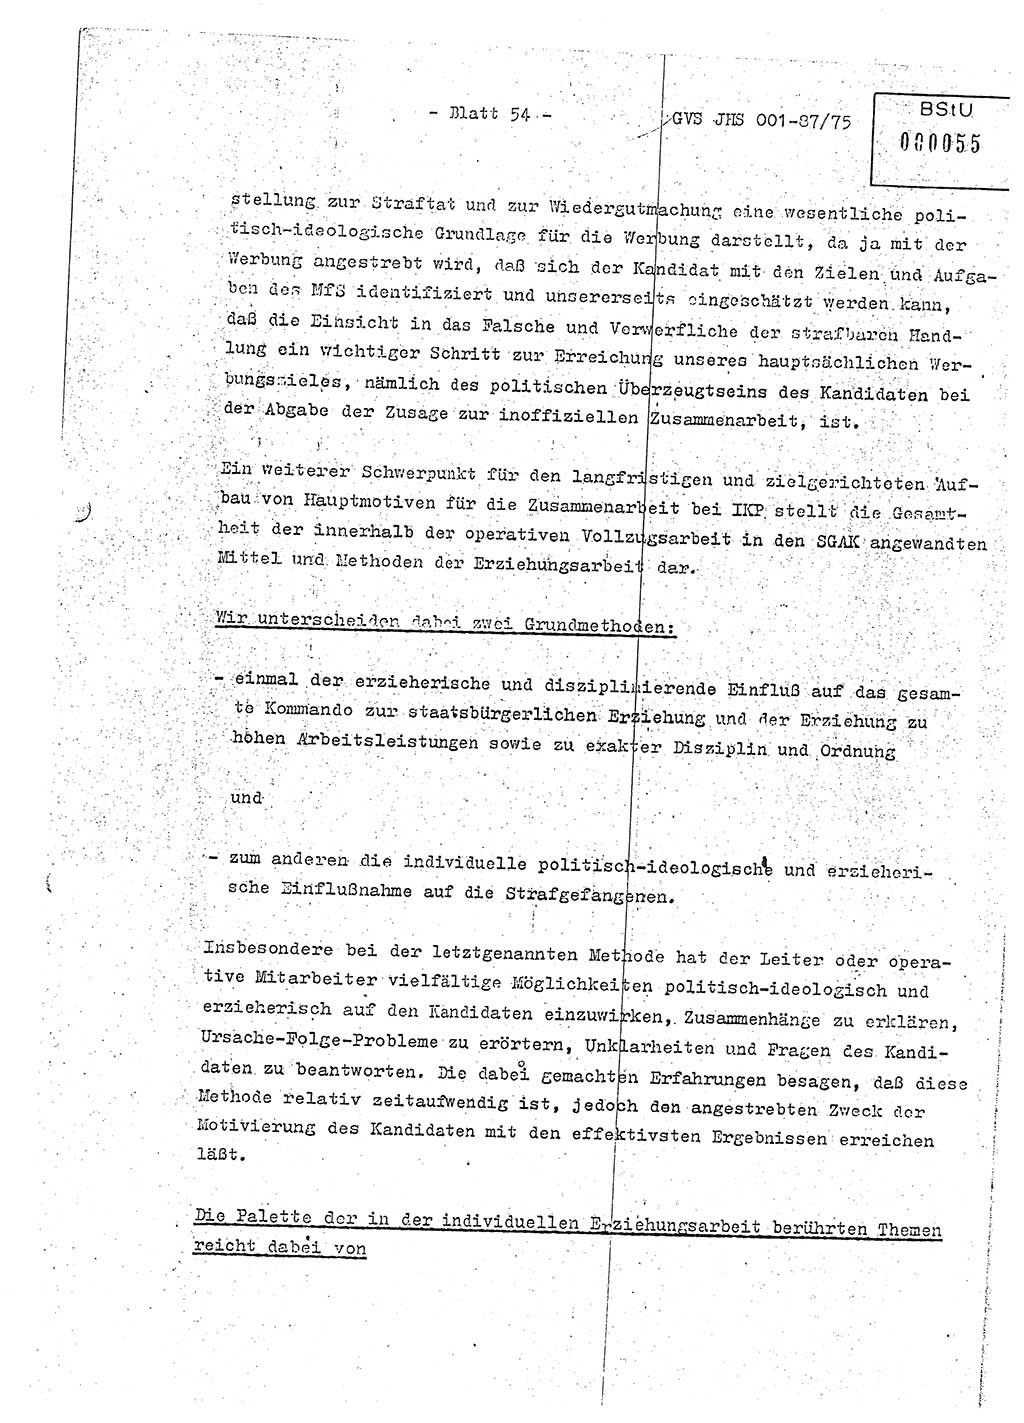 Diplomarbeit Hauptmann Volkmar Heinz (Abt. ⅩⅣ), Oberleutnant Lothar Rüdiger (BV Lpz. Abt. Ⅺ), Ministerium für Staatssicherheit (MfS) [Deutsche Demokratische Republik (DDR)], Juristische Hochschule (JHS), Geheime Verschlußsache (GVS) o001-87/75, Potsdam 1975, Seite 54 (Dipl.-Arb. MfS DDR JHS GVS o001-87/75 1975, S. 54)